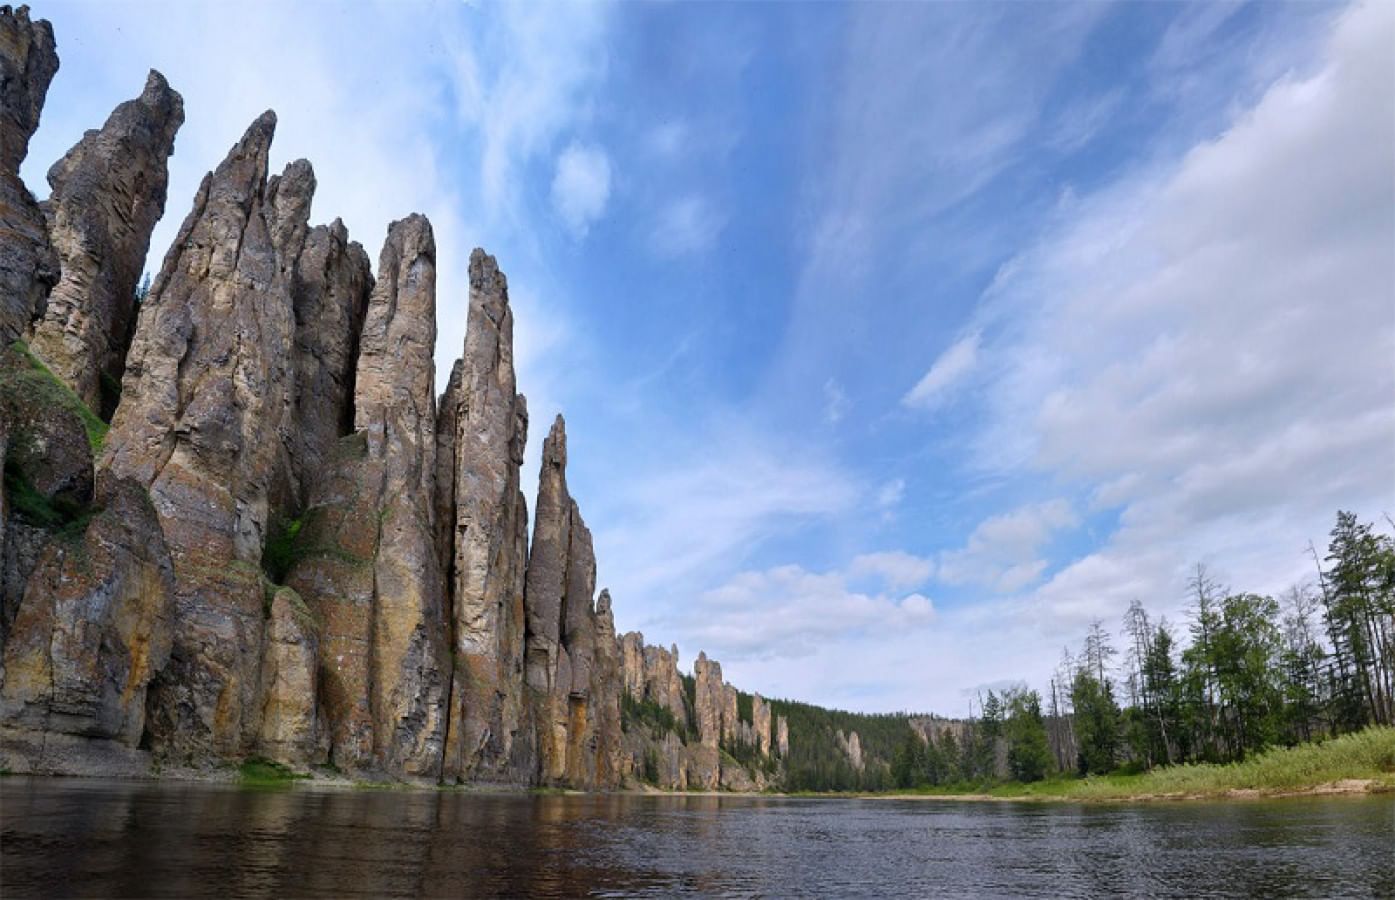 Какие природные объекты запечатлены. Природный парк Ленские столбы. Риродный парк «Ленские столбы». Река Лена Ленские столбы. Синские столбы Саха Якутия.